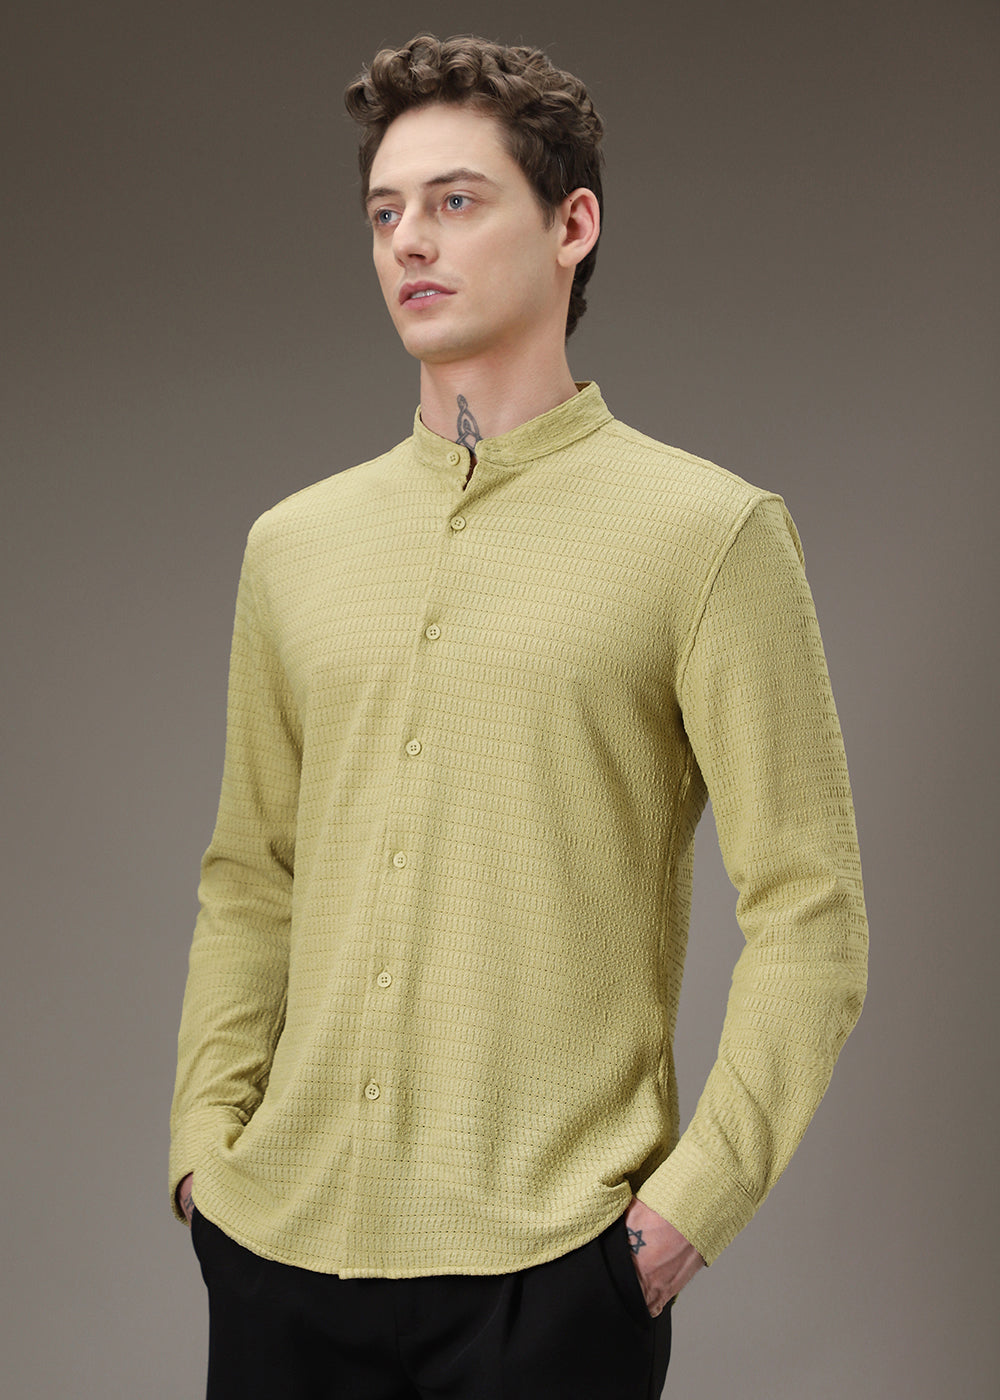 Pistachio Green Knitted Crochet Shirt